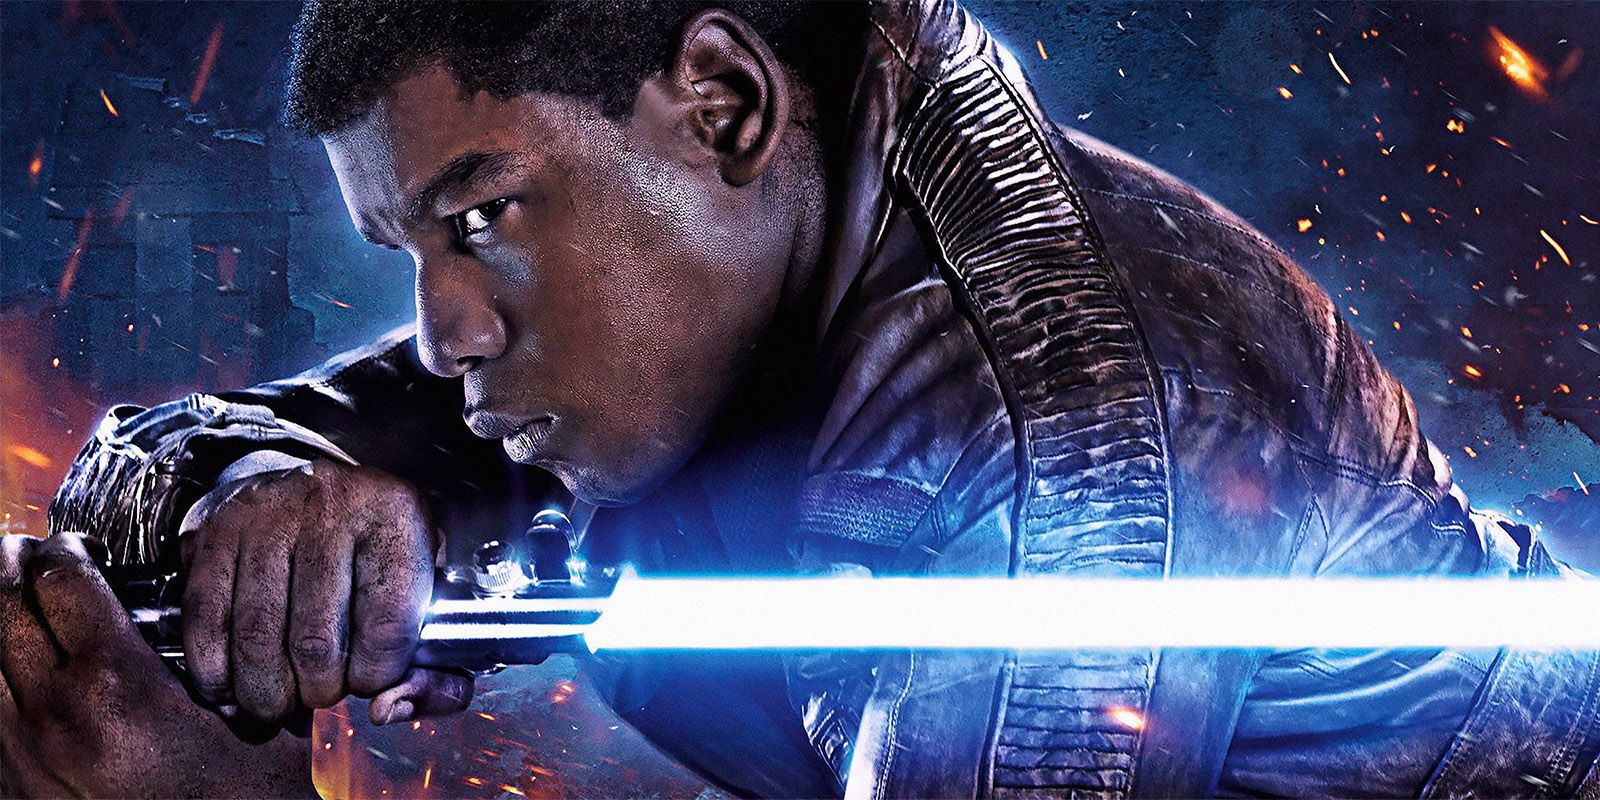 Finn poster for The Force Awakens